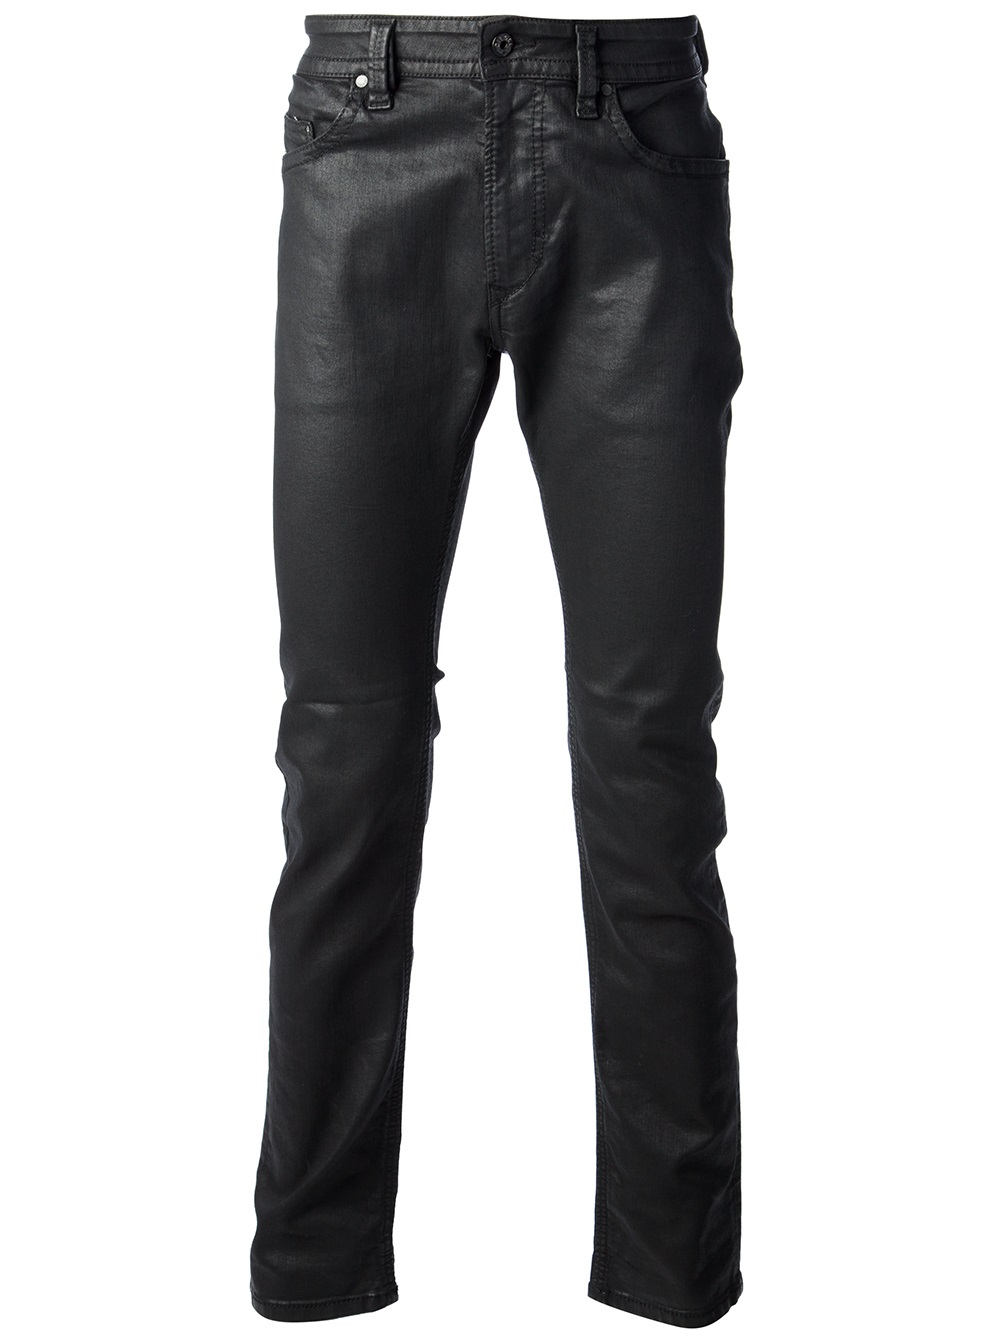 Lyst - Diesel Waxed Denim Jeans in Black for Men